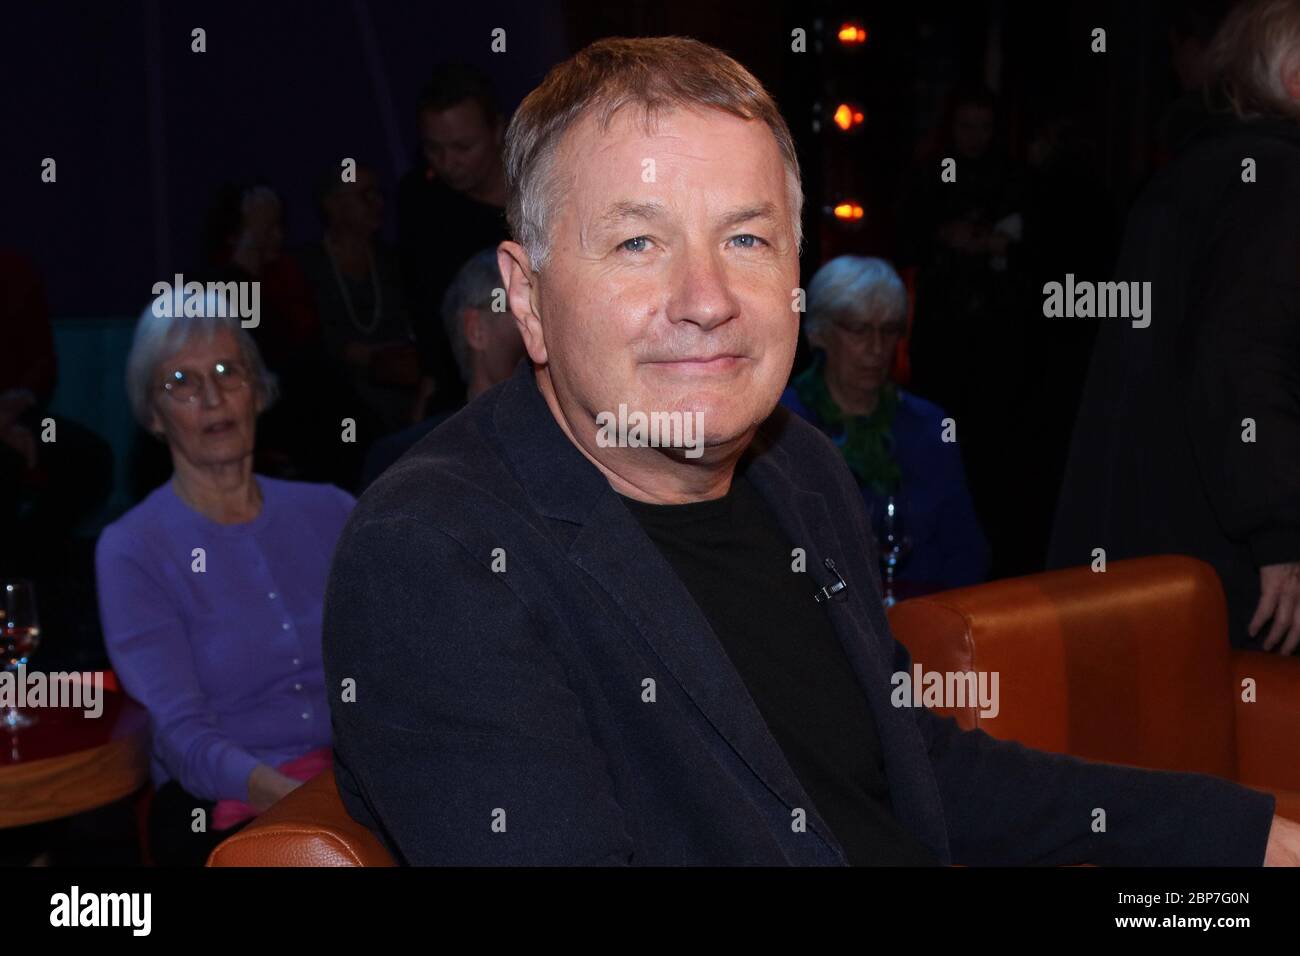 Thomas Ruehmann,NDR Talk show como parte de la charla el martes de ARD,Hamburgo,05.11.2019 Foto de stock